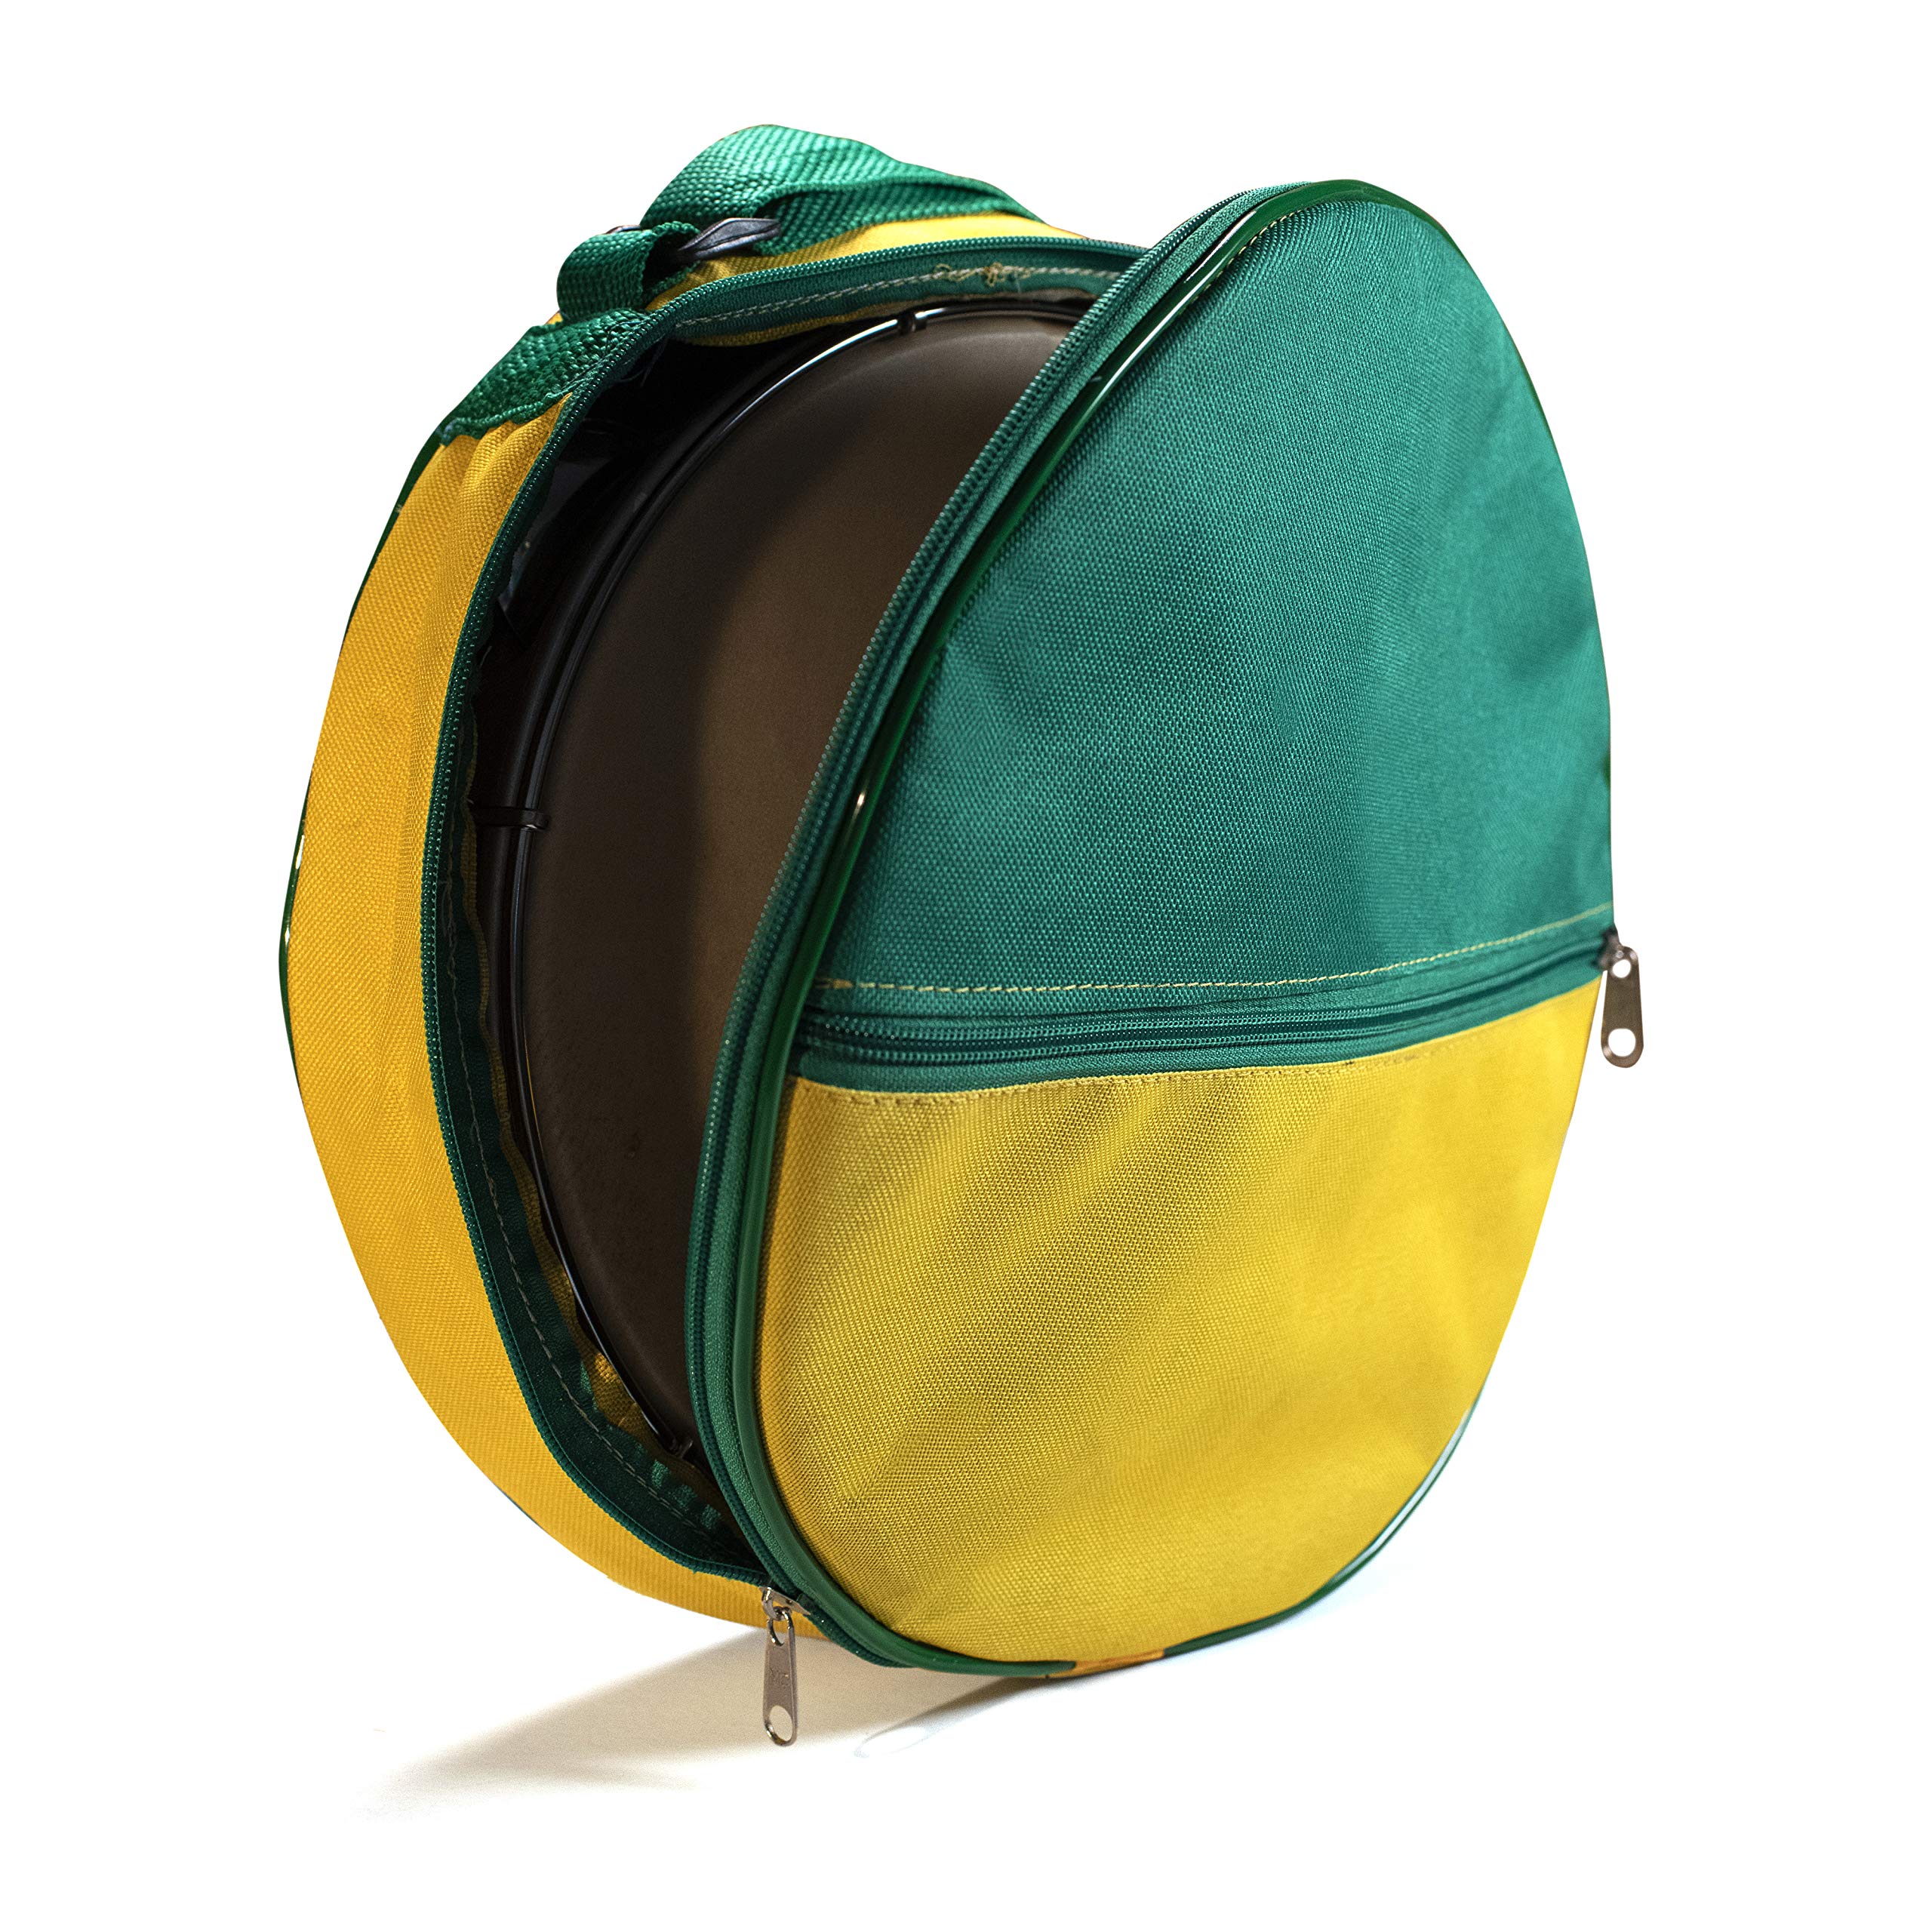 Robuste Tasche für Pandeiro Drum Tamburin Samba Brasil Musikinstrumente 25,4 cm – Grün/Gelb